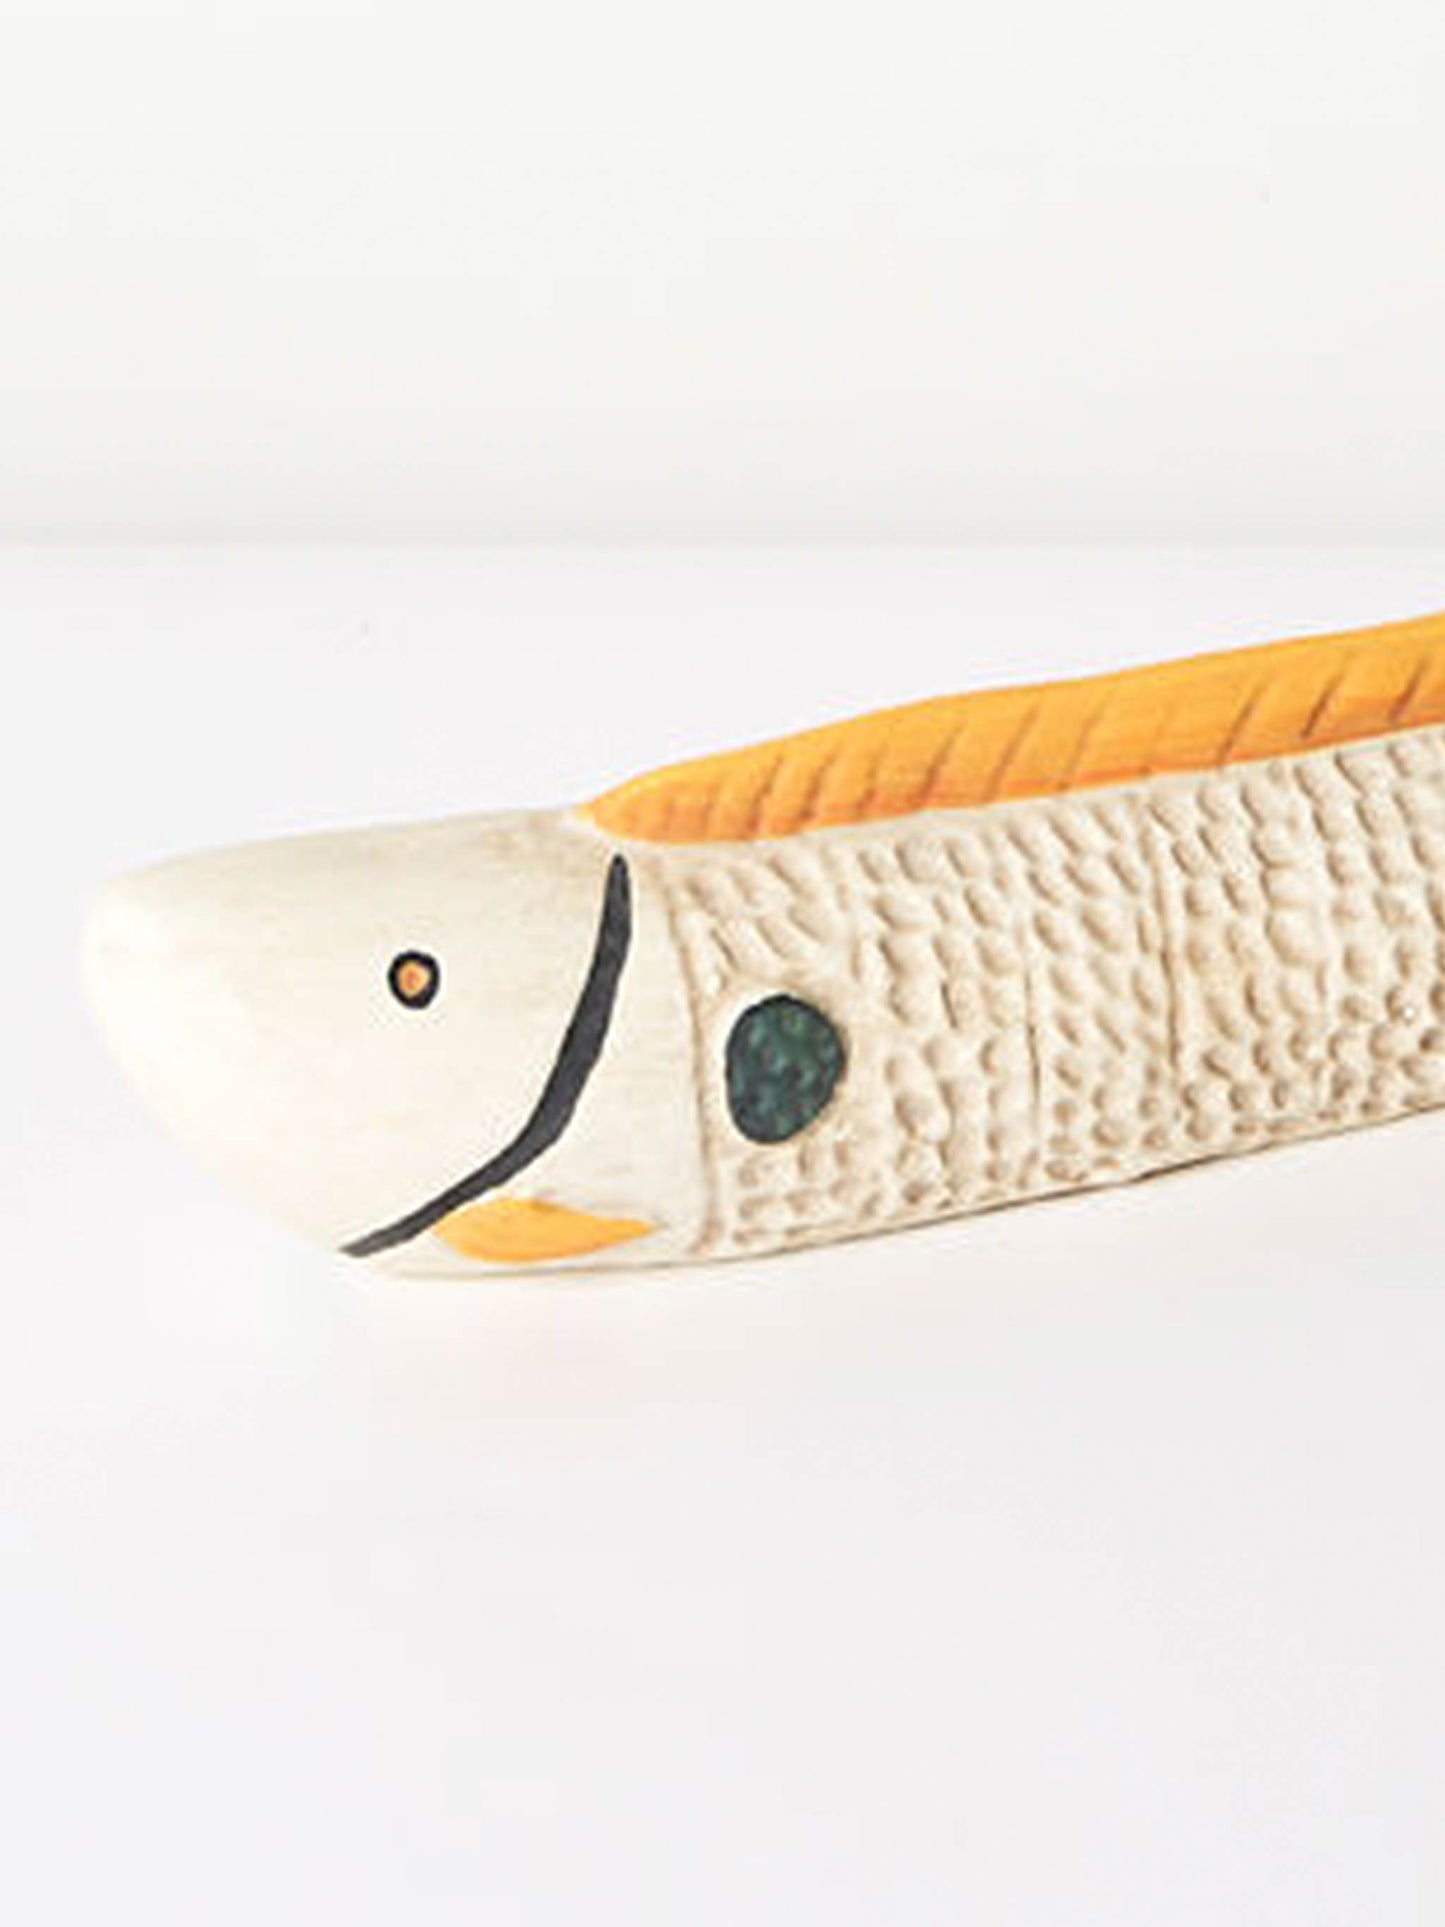 Kino Ceramic Long Fish Decorative Sculpture Ornament – White Multi Tone